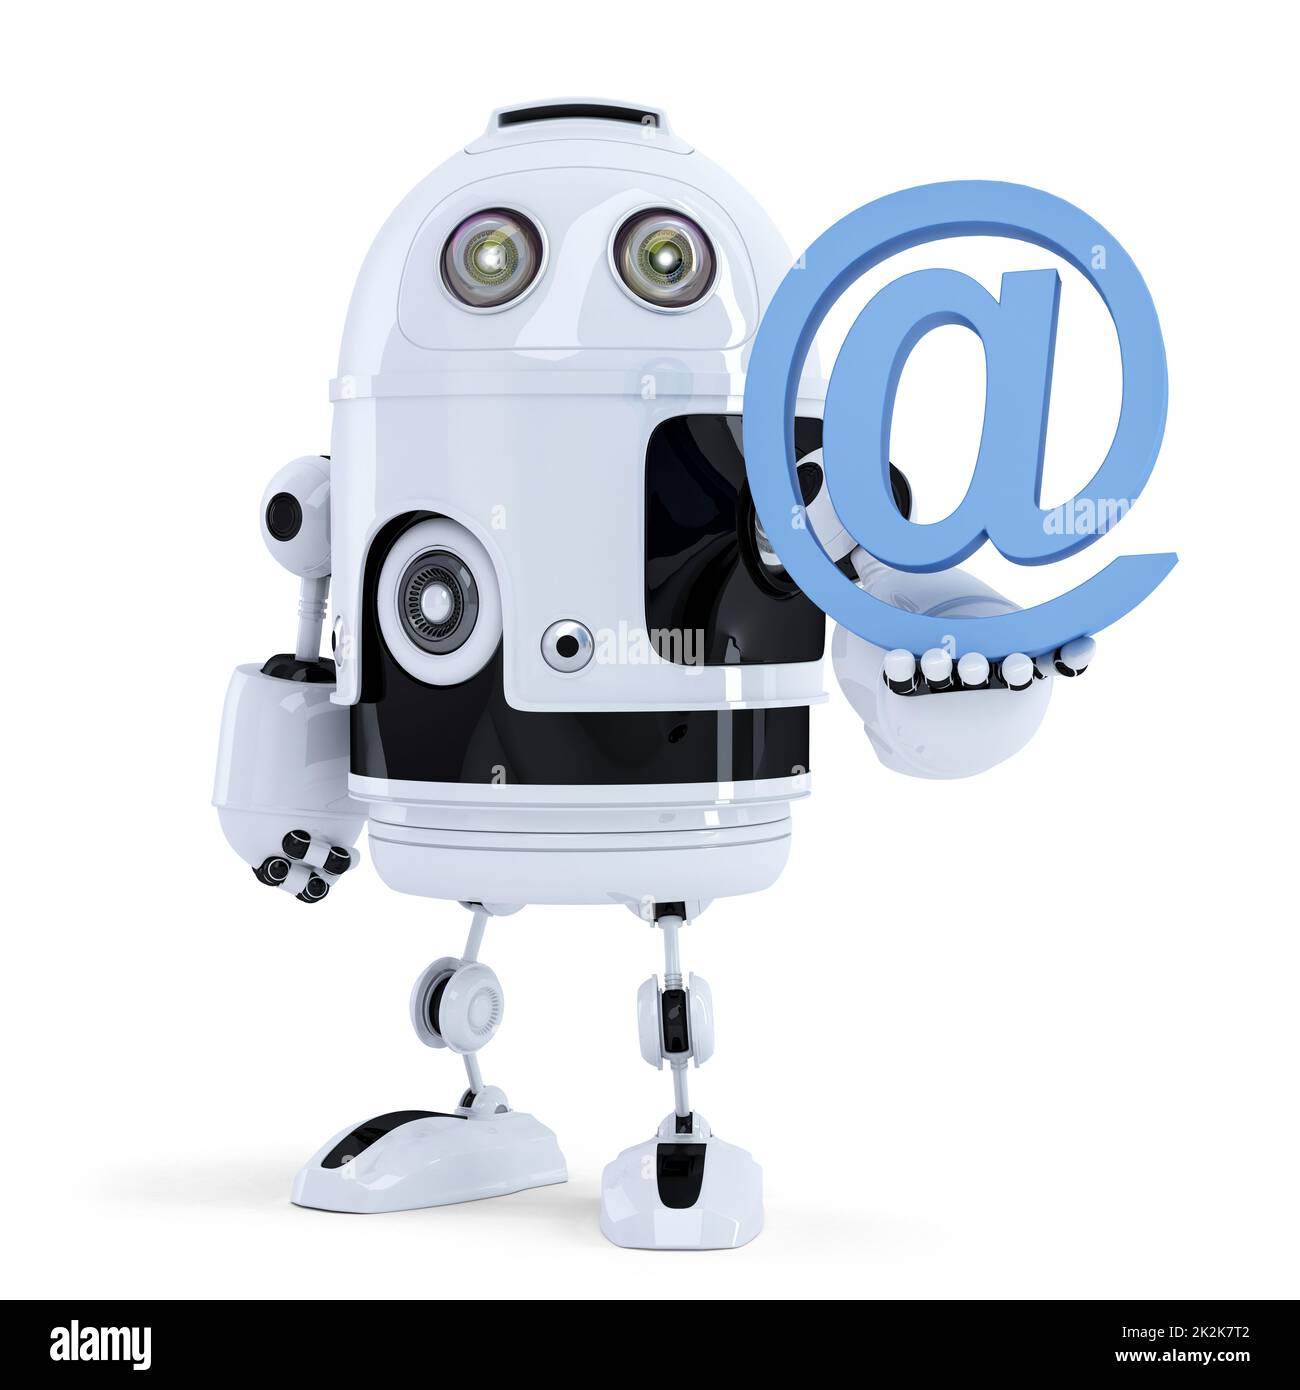 Robot portant un symbole d'e-mail. Isolé. Contenir un masque Banque D'Images